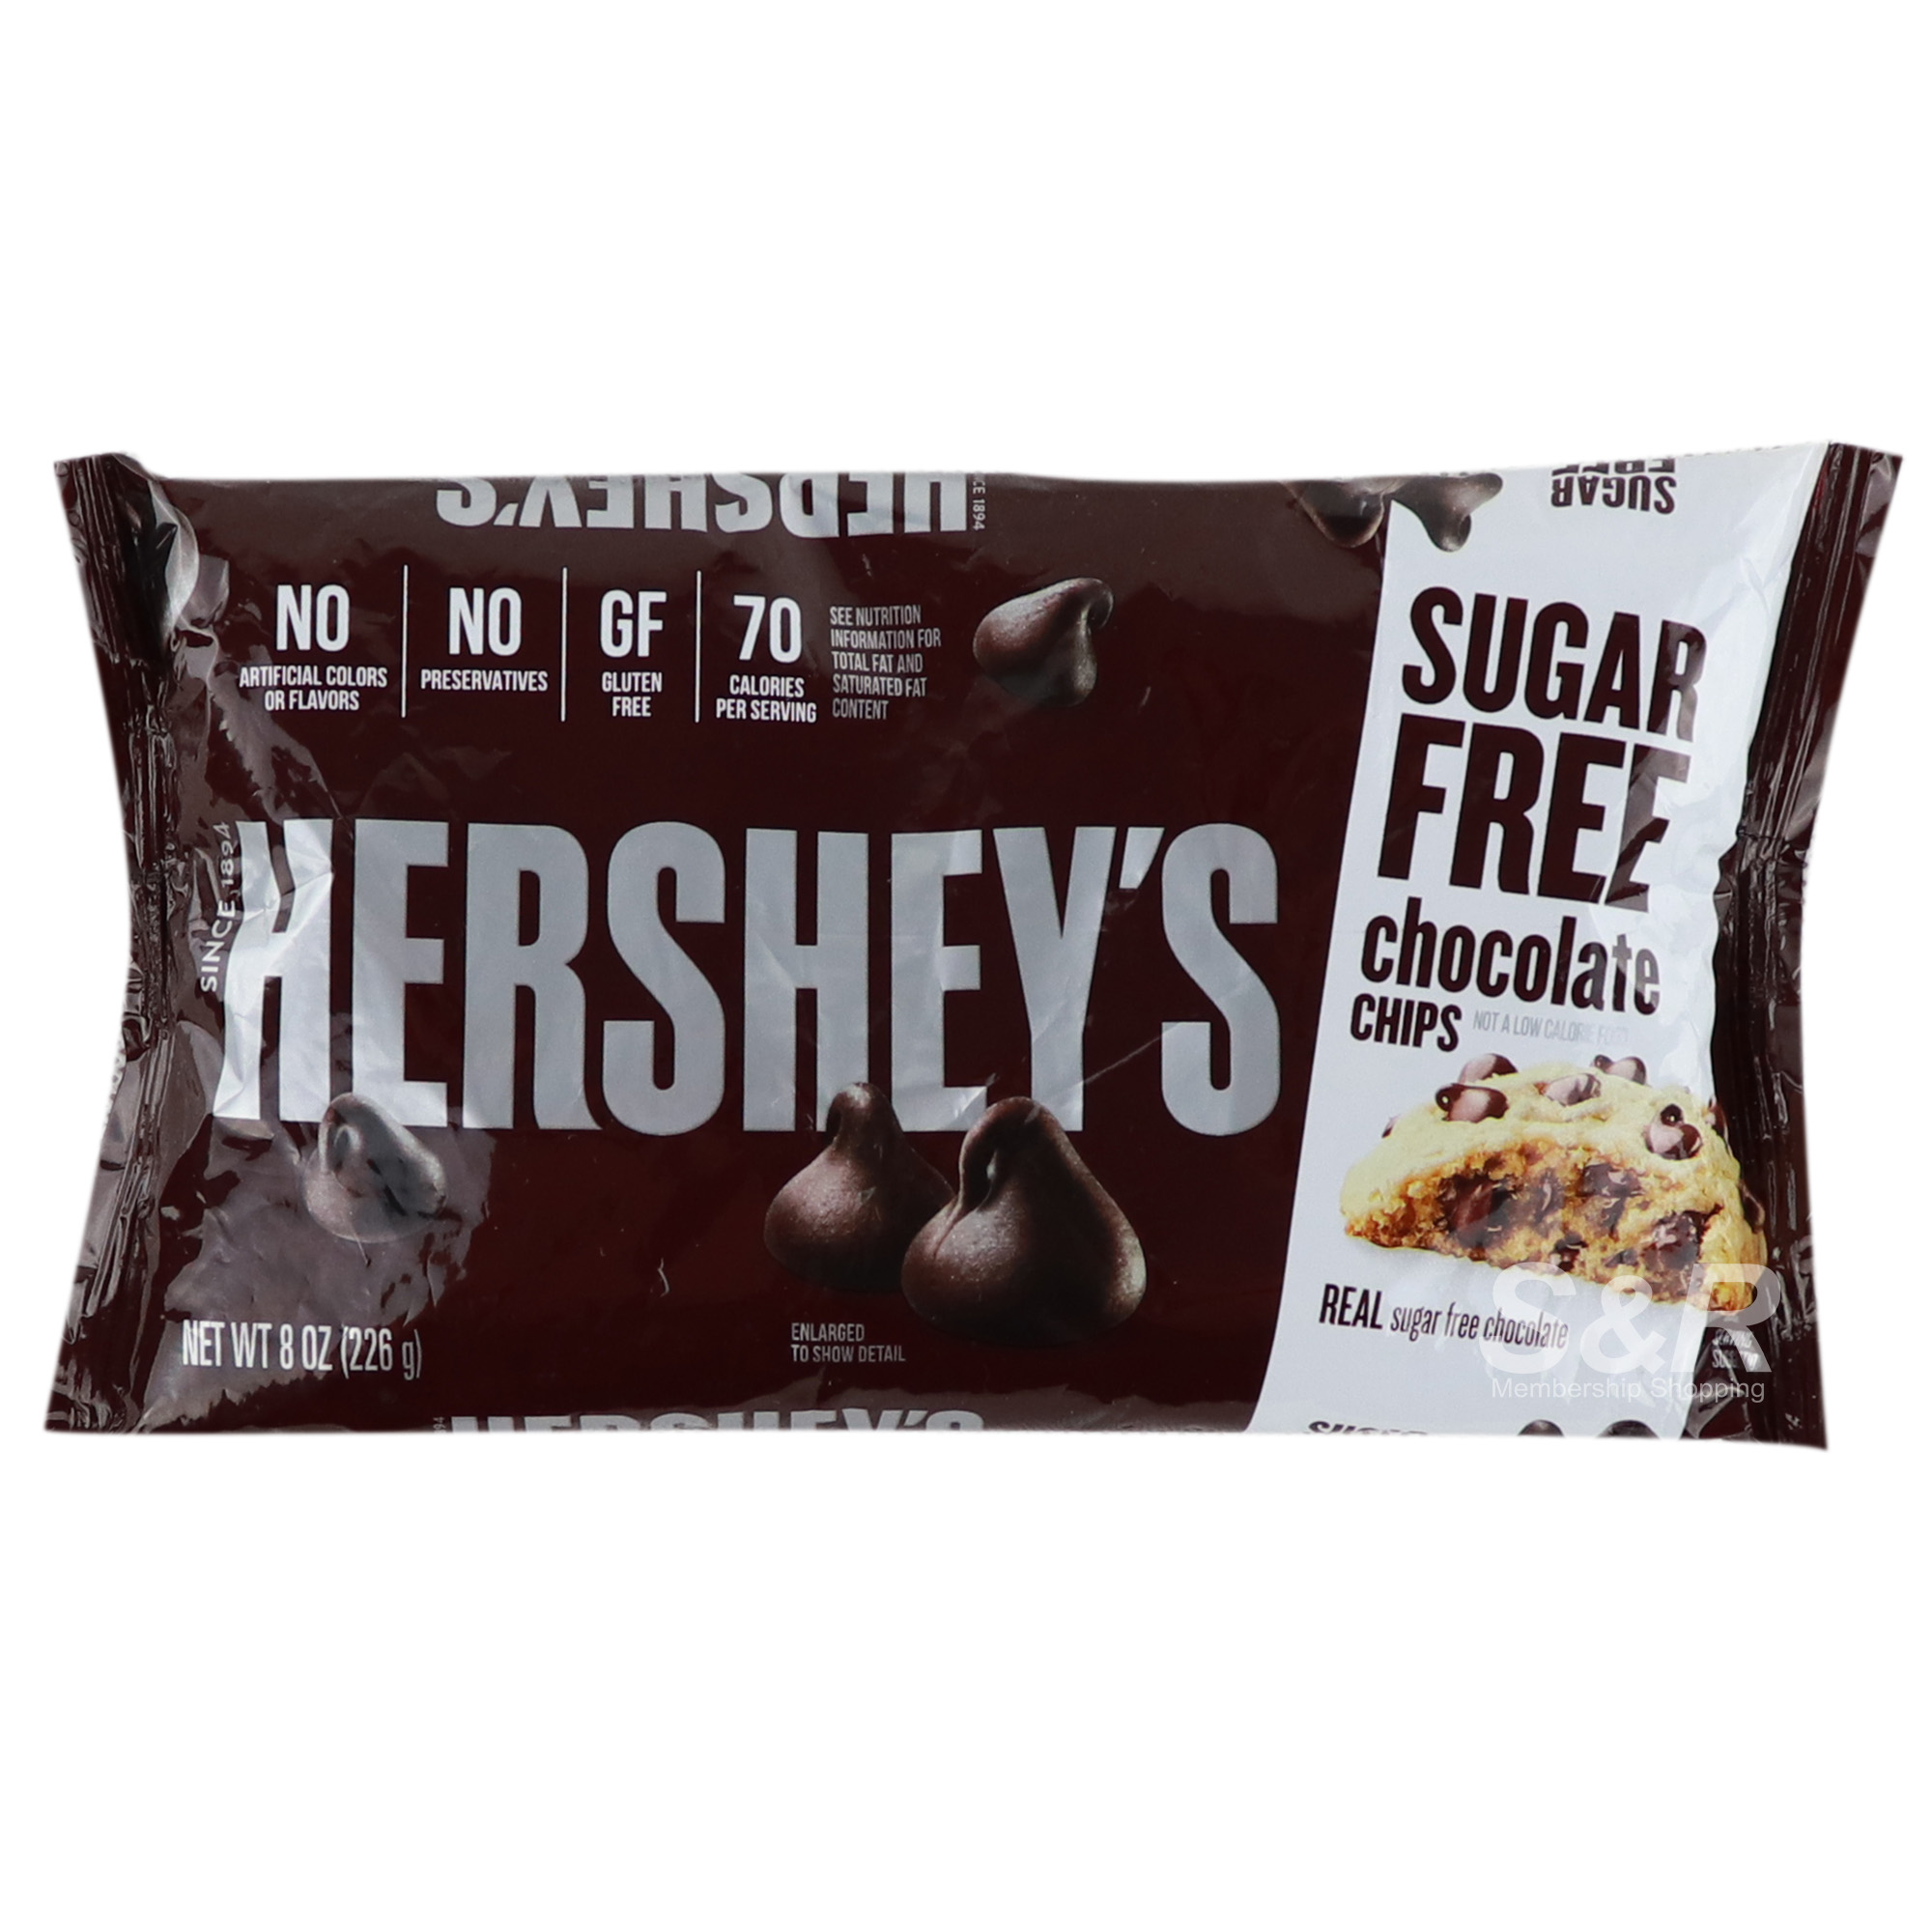 Hershey's Sugar Free Chocolate Chips 226g